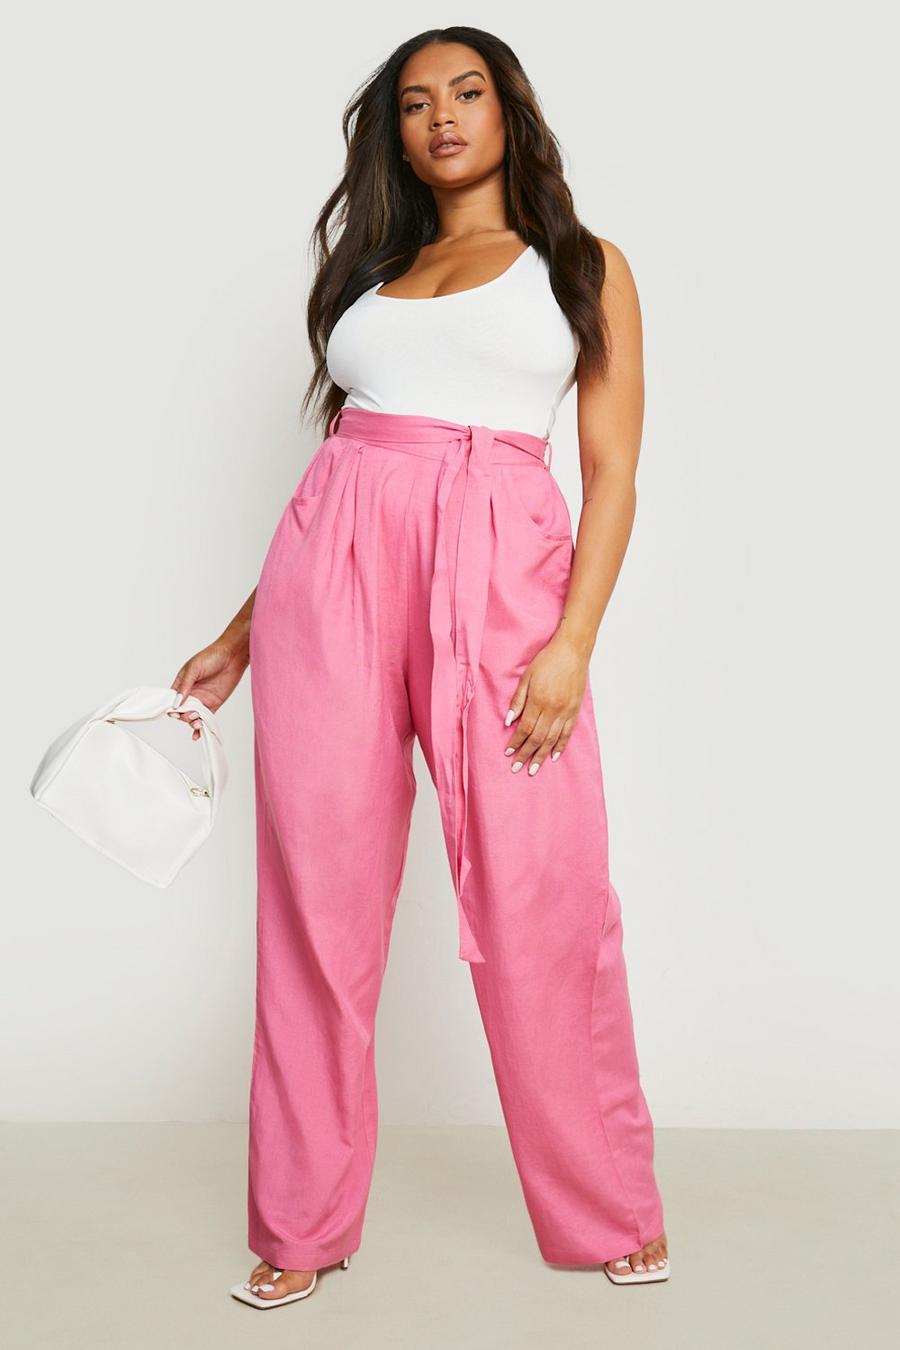 Pantalón Plus de pernera ancha y lino con cinturón, Hot pink